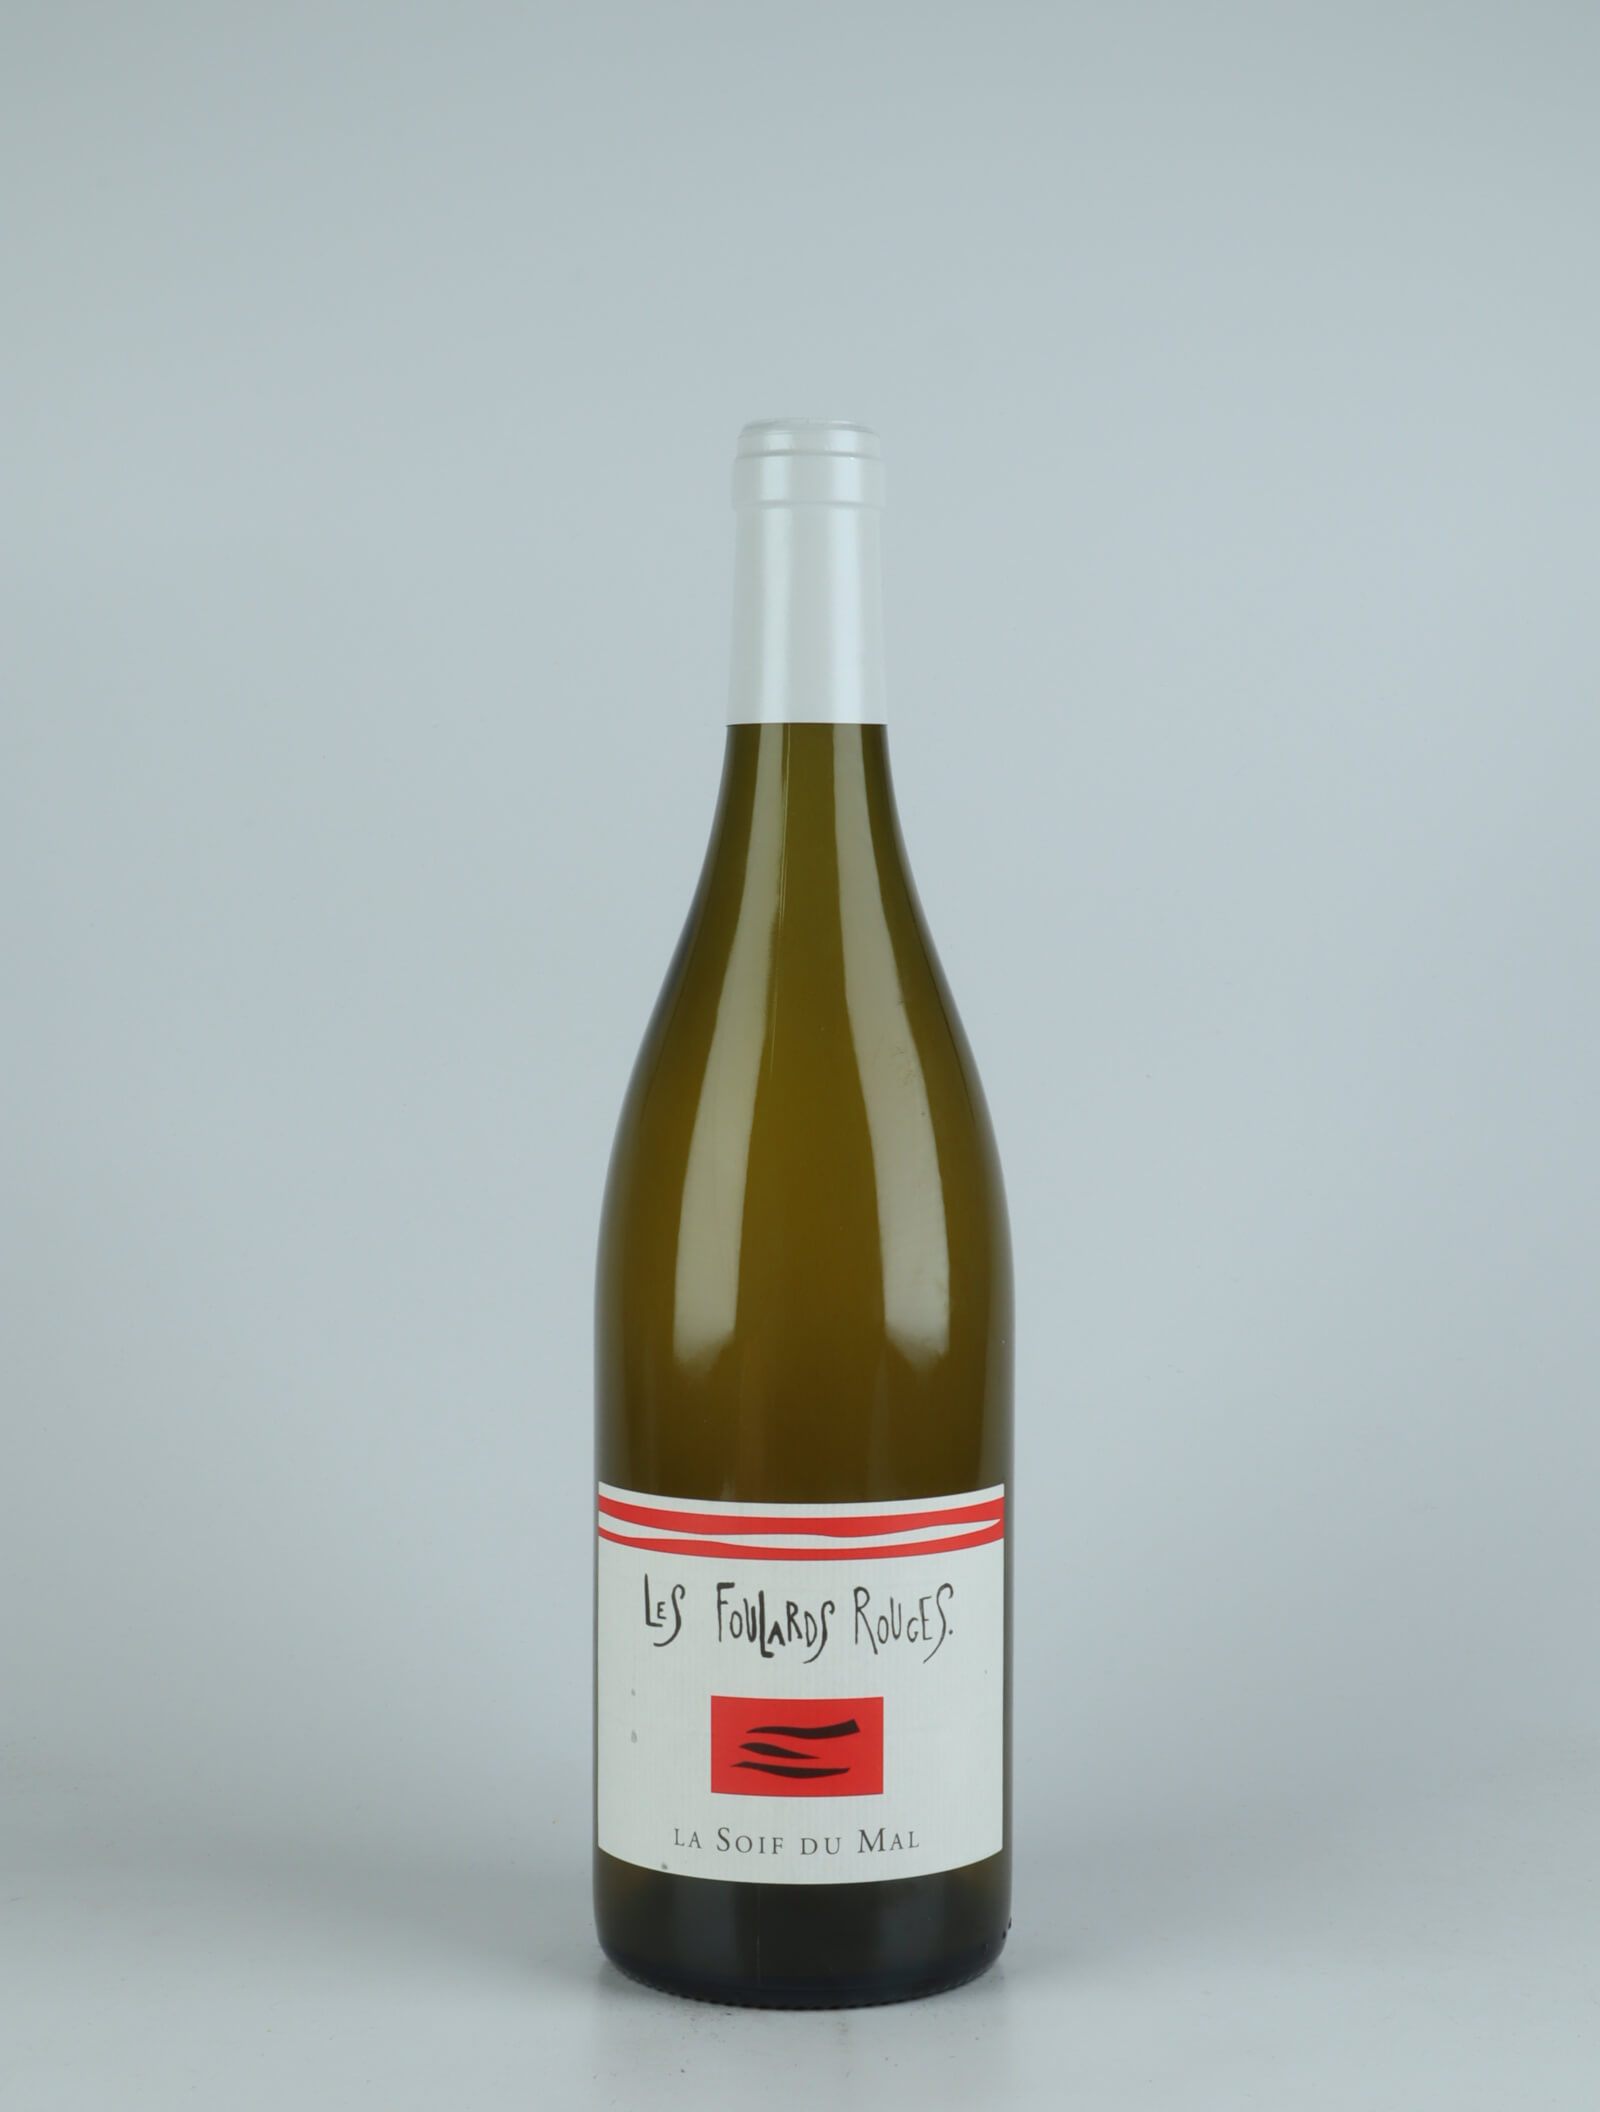 En flaske 2021 Soif du Mal Blanc Hvidvin fra Les Foulards Rouges, Languedoc i Frankrig